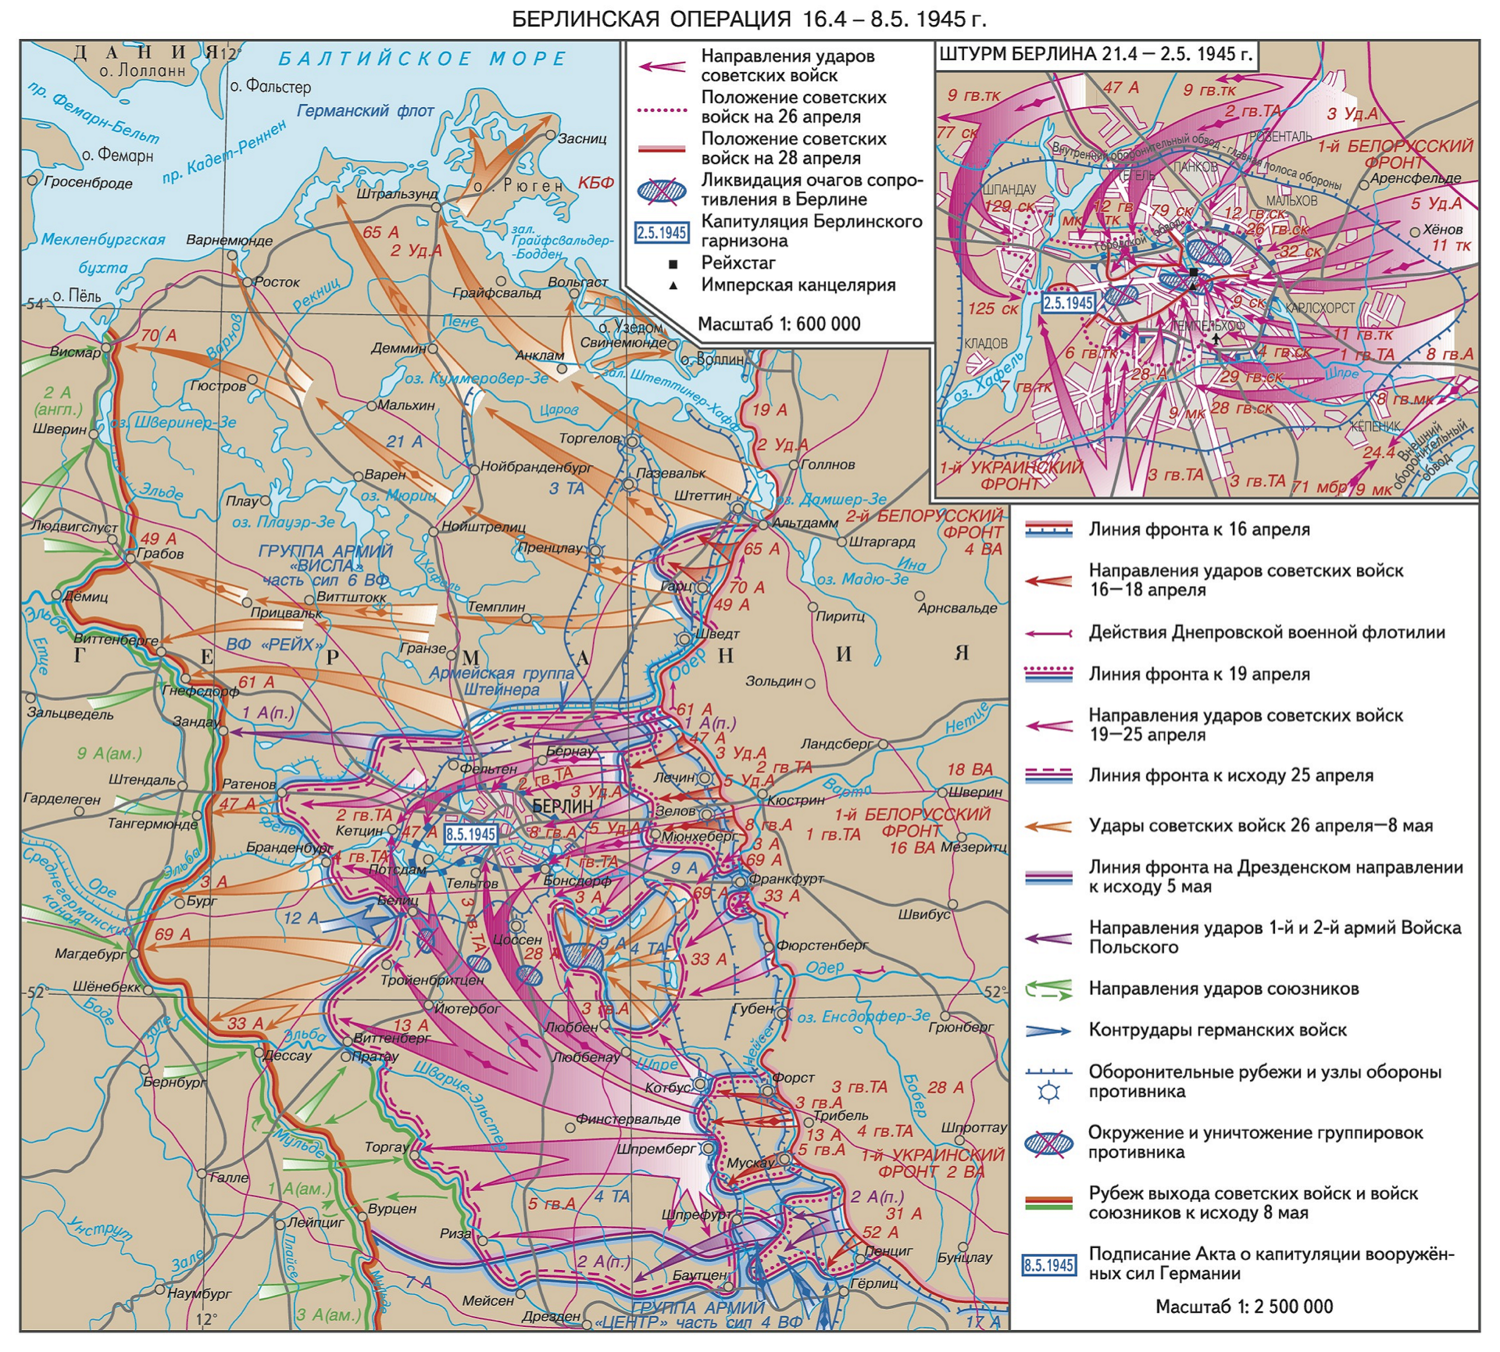 Фронт 1 мая. Берлинская операция 1945 г карта. Операция Берлин 1945 карта. Карта Берлинской операции 1945 года. Карта Берлинской операции 16 апреля- 8 мая 1945.